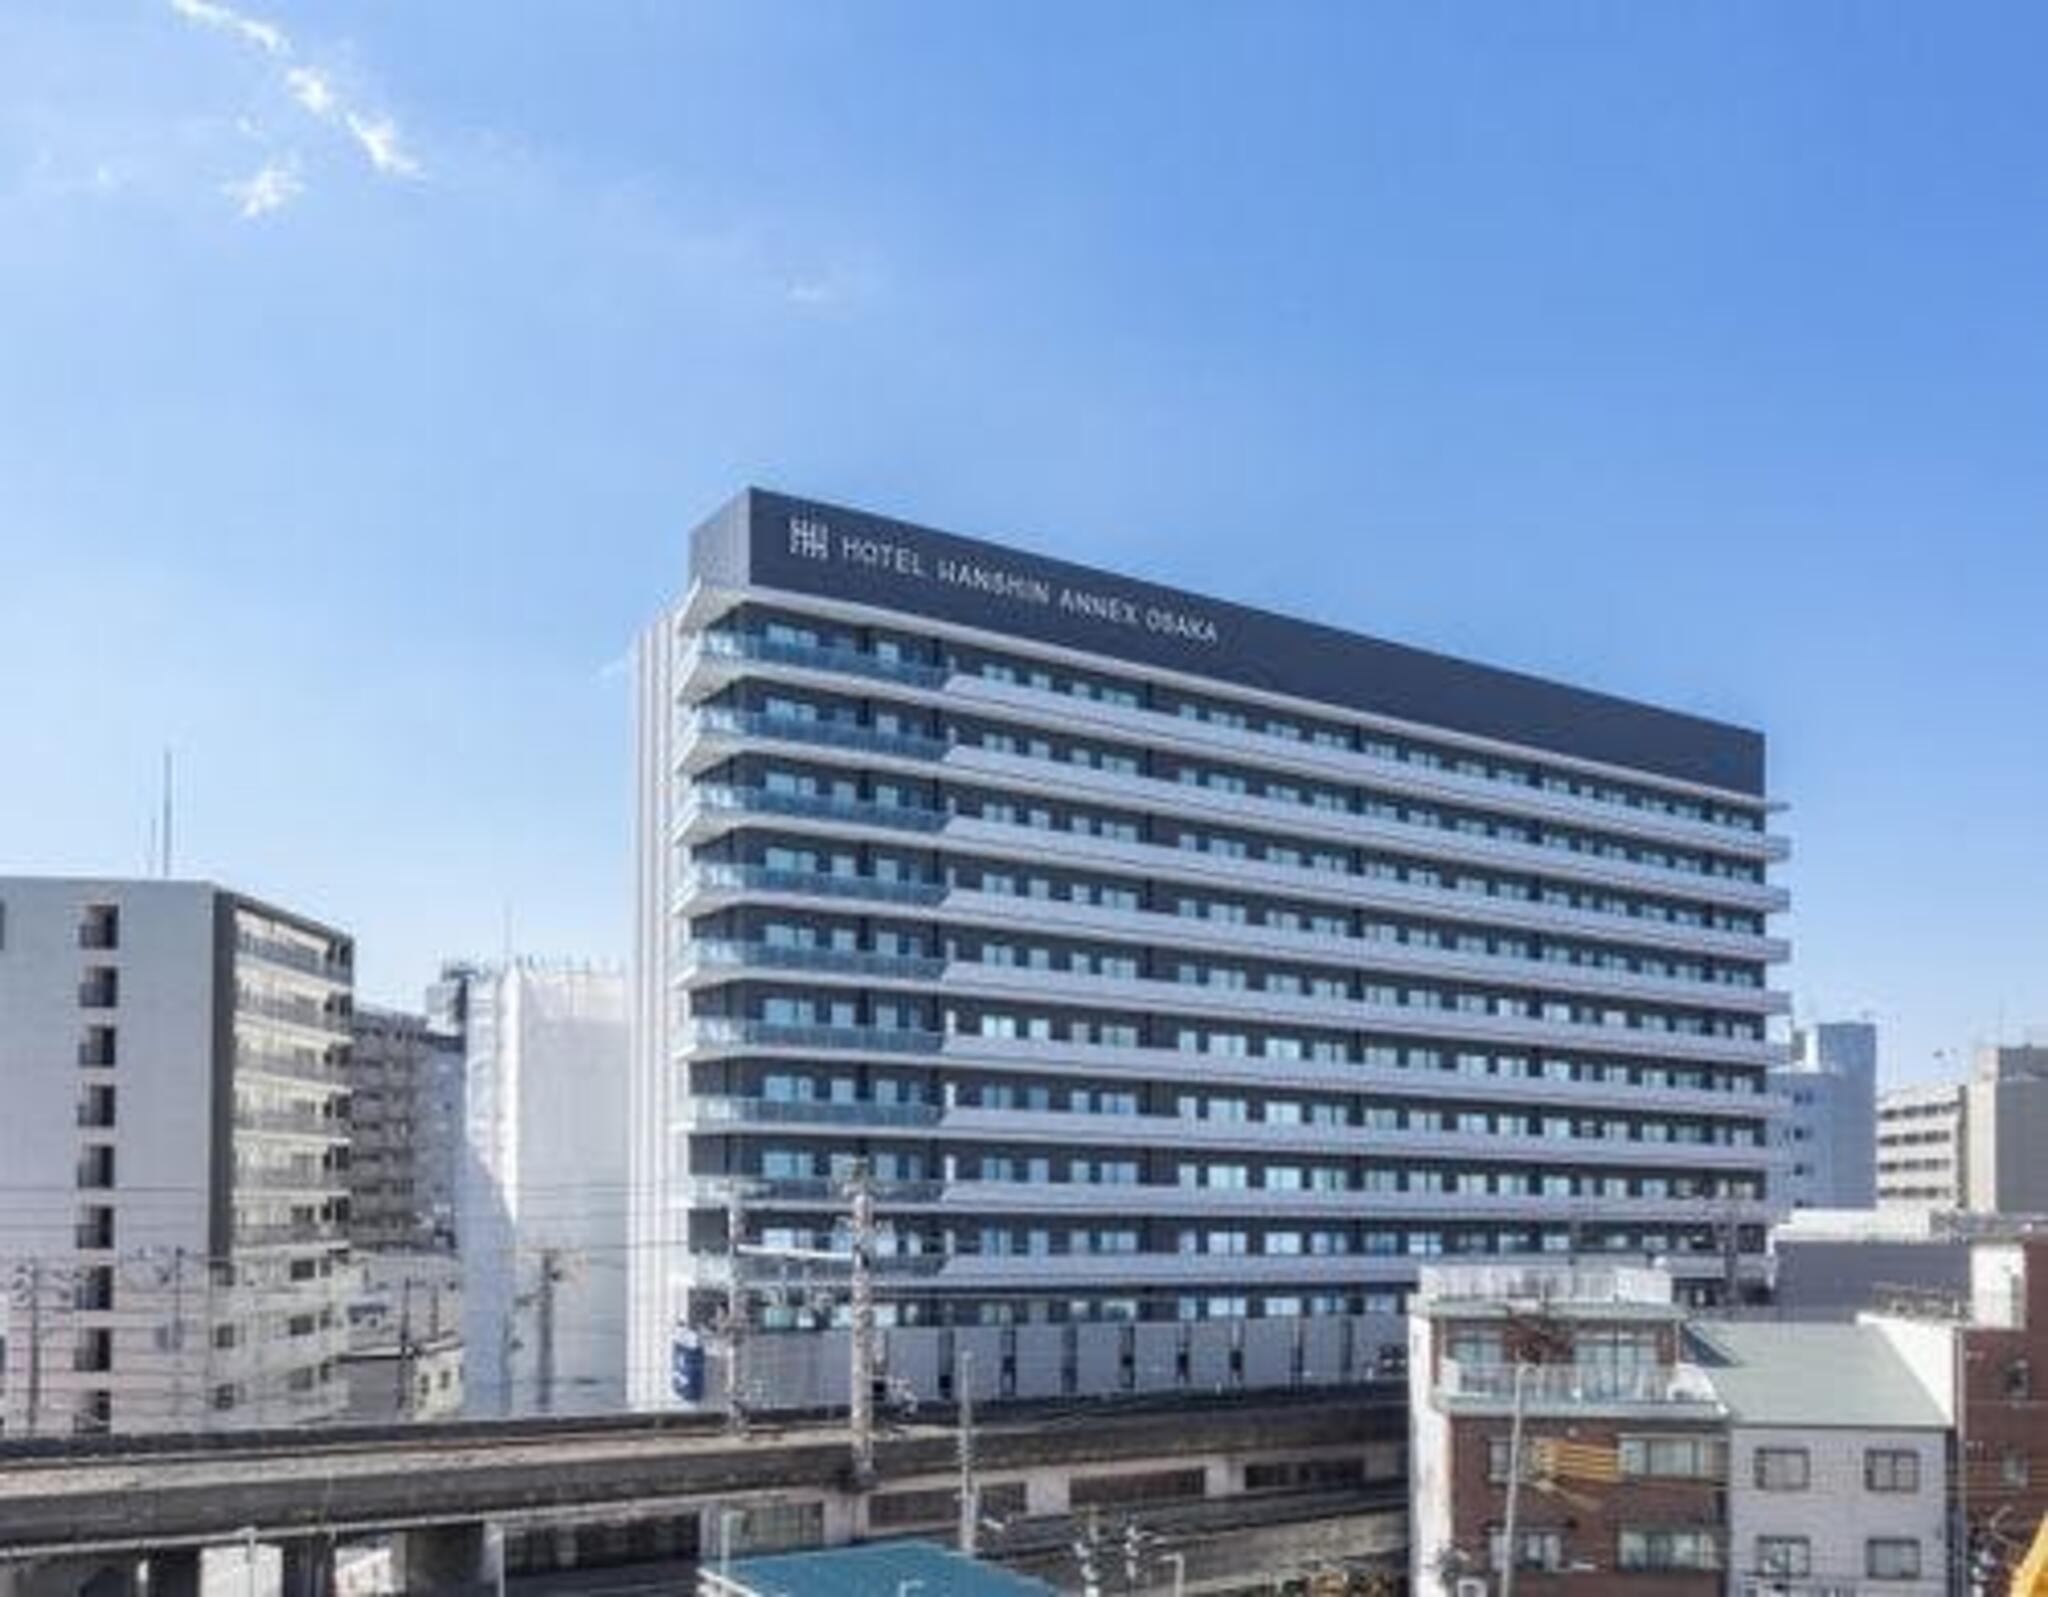 ホテル阪神アネックス大阪の代表写真2